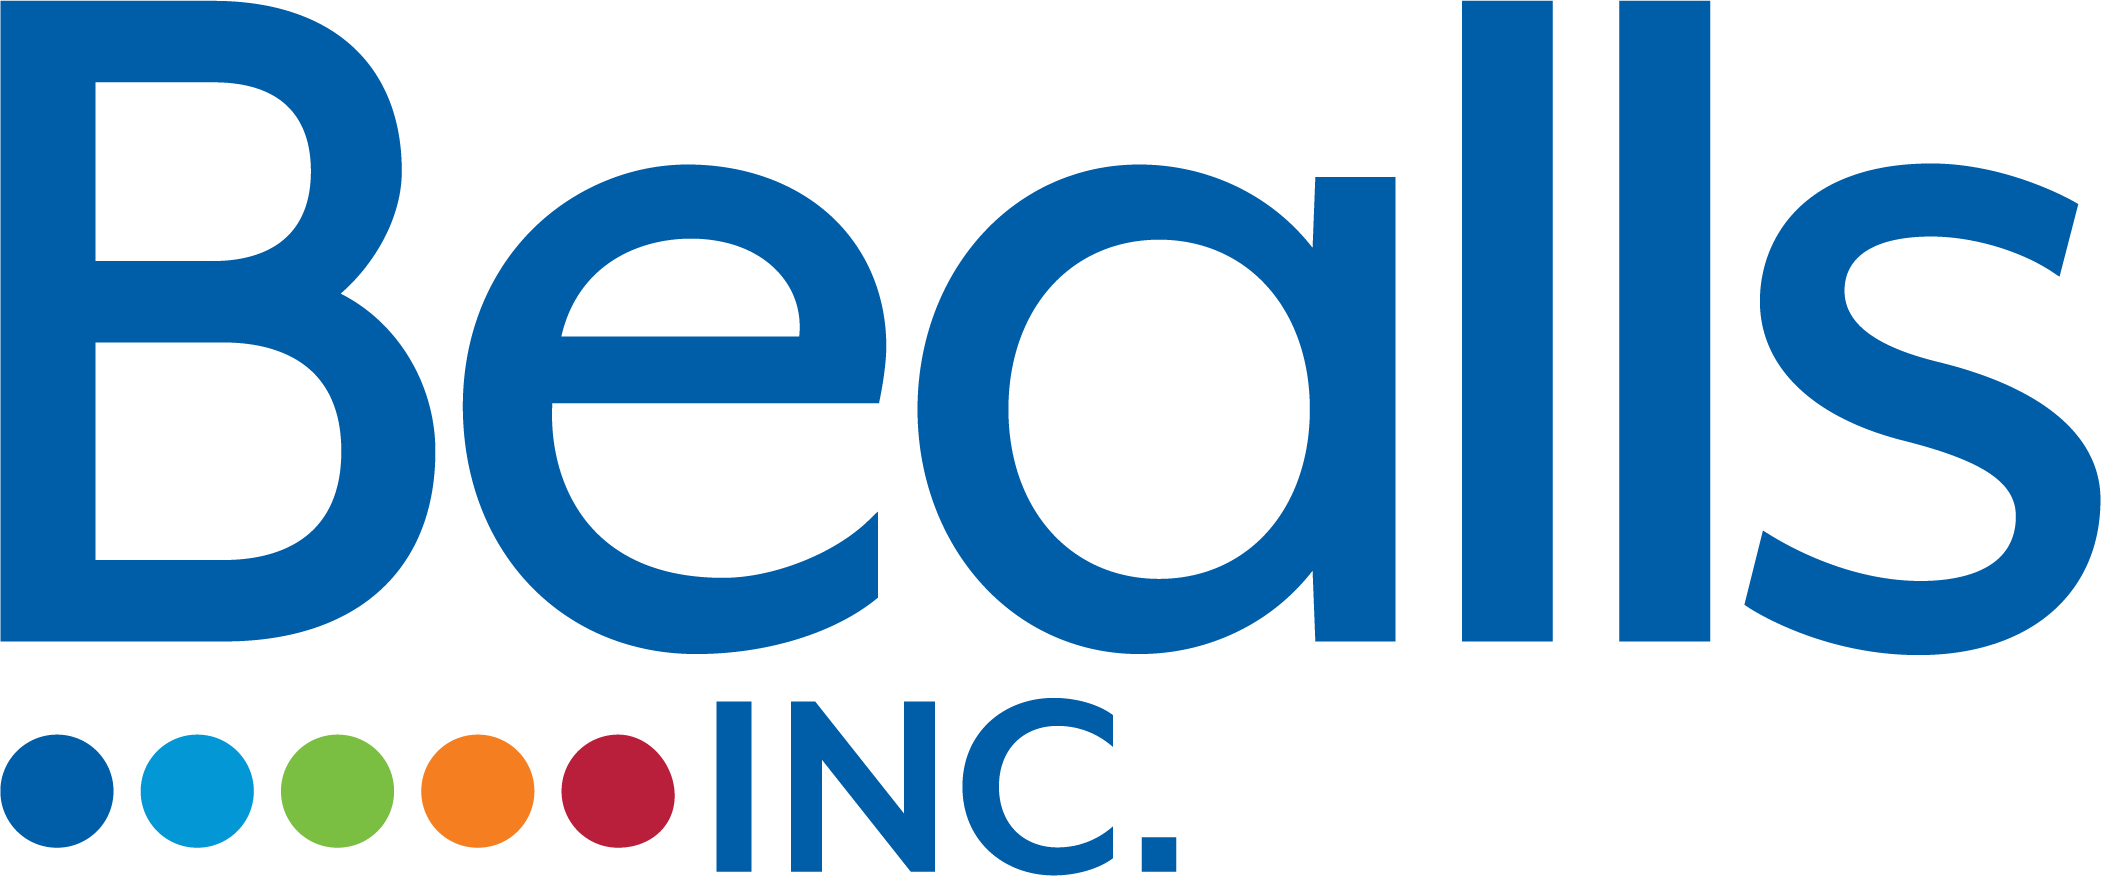 Bealls Inc.